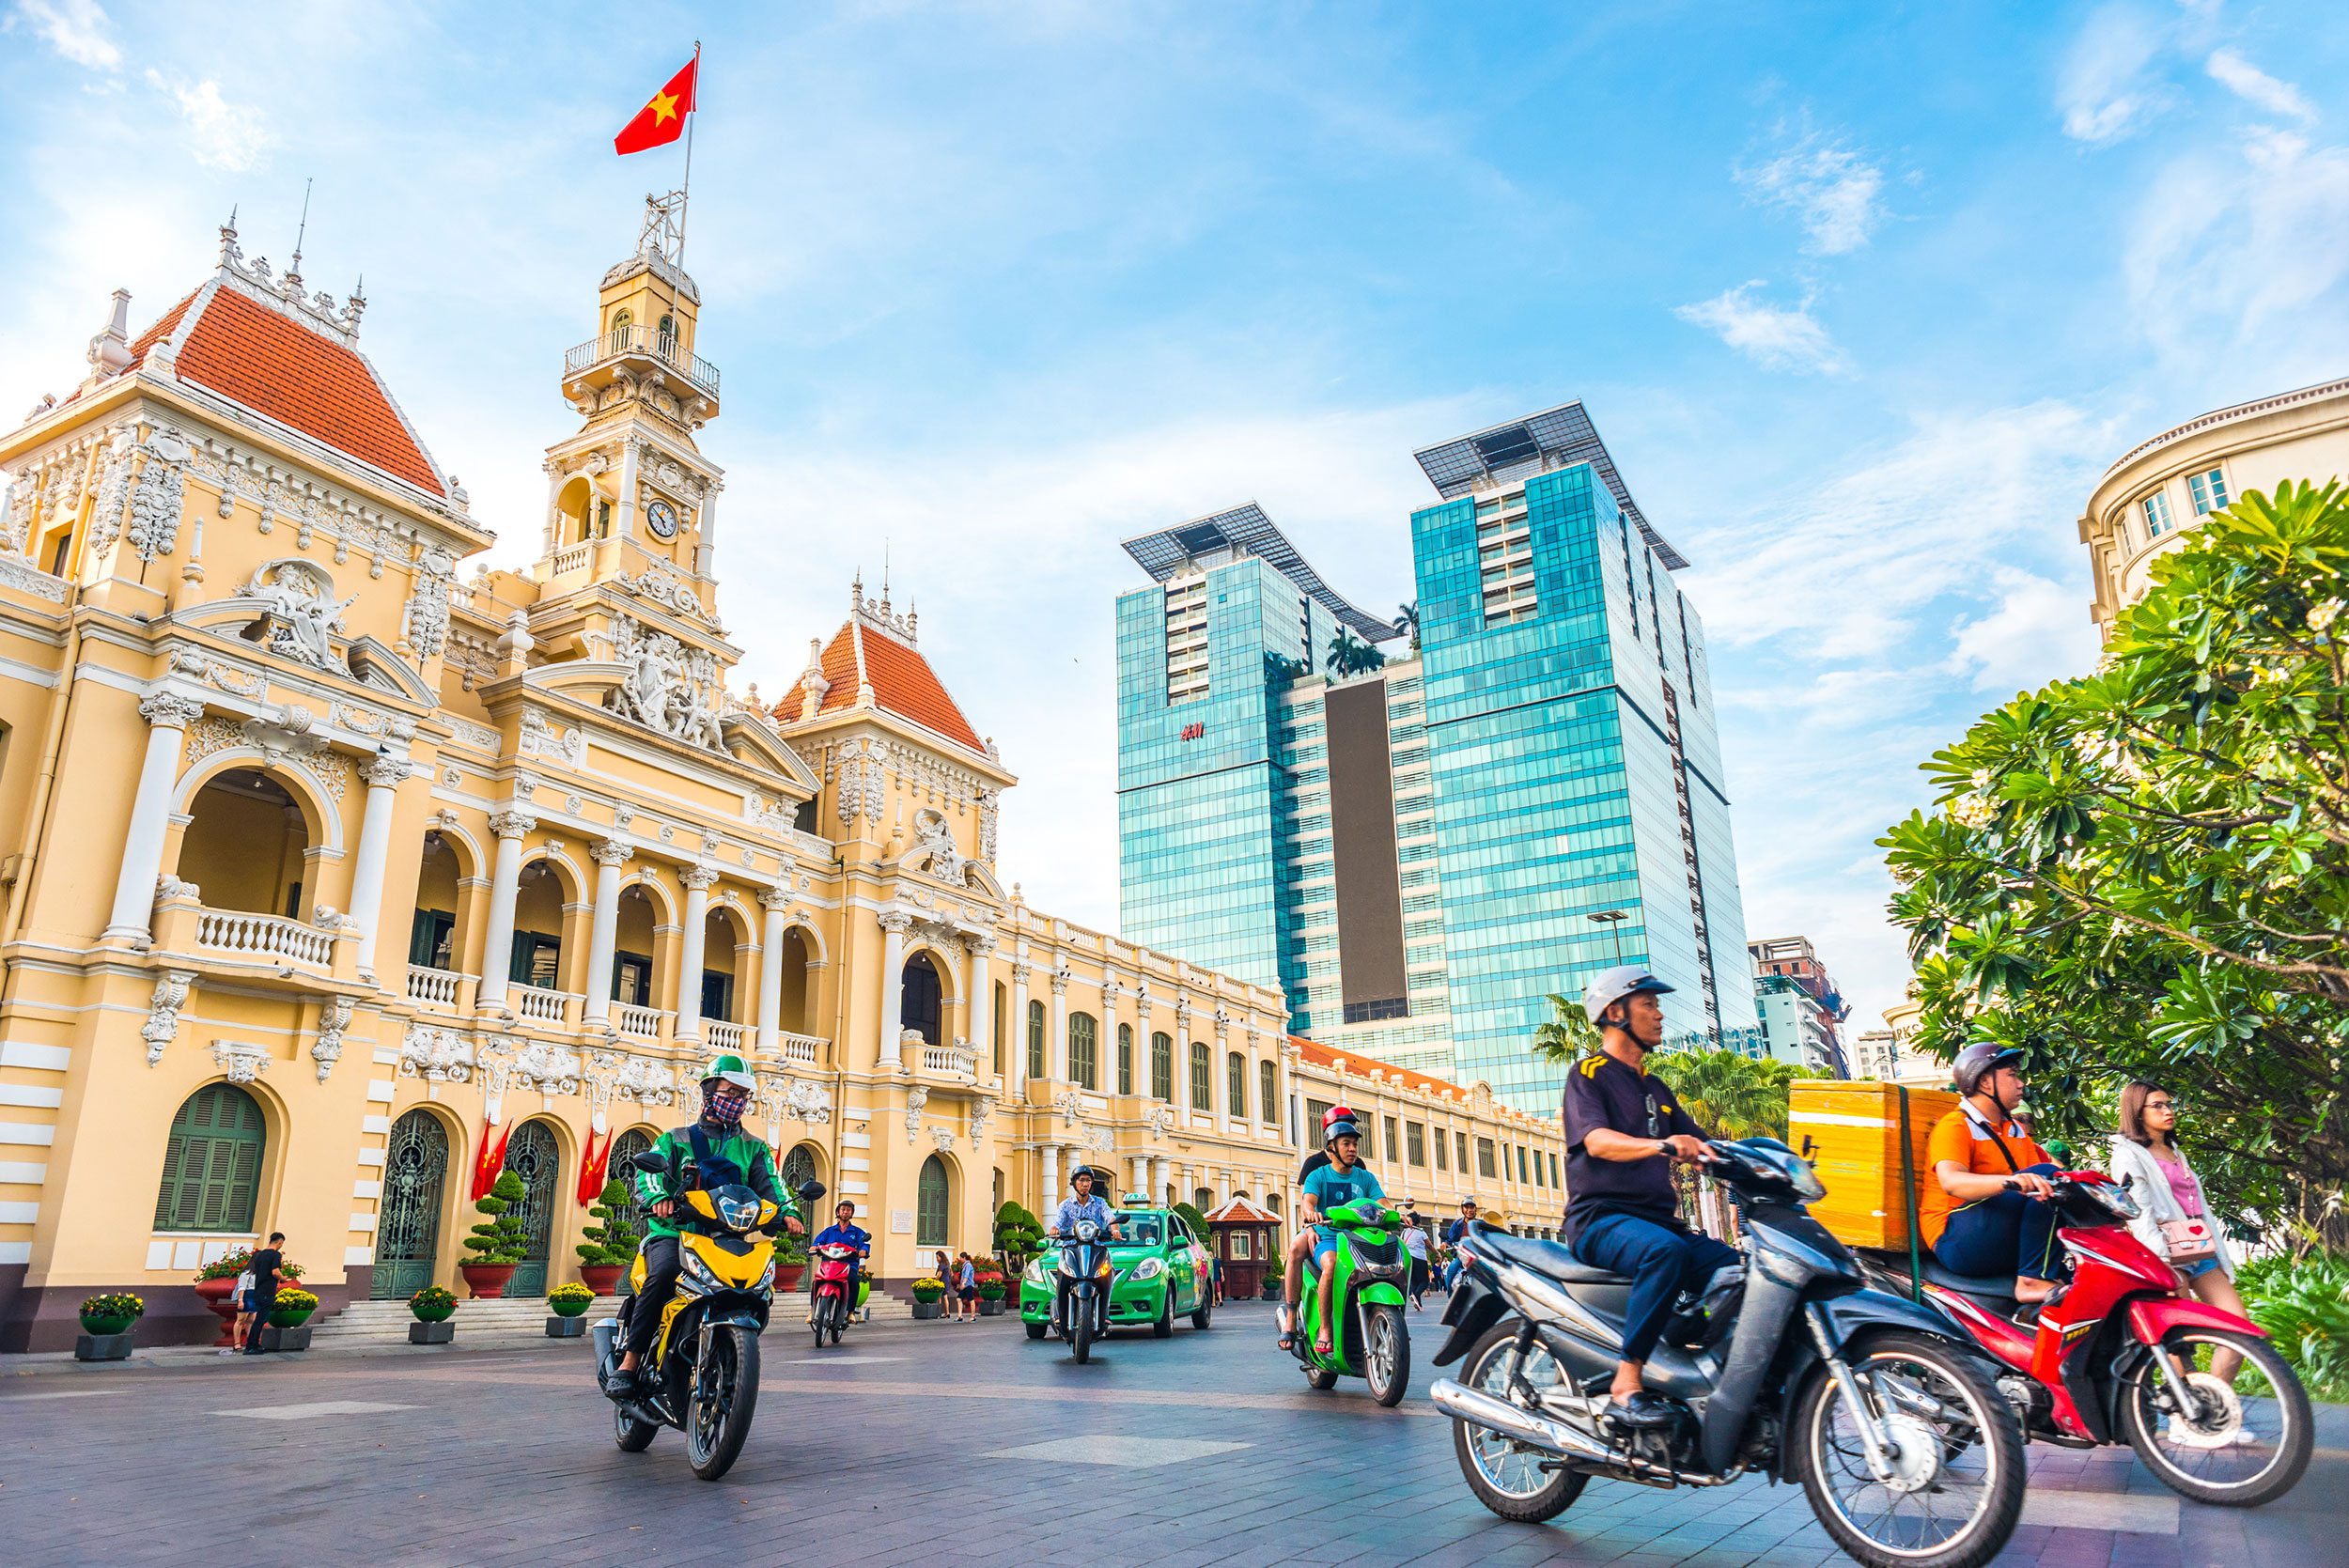 Thành phố Hồ Chí Minh, thành phố mang tên bác trước đây được gọi là Sài Gòn, là một thành phố tuyệt đẹp ở Châu Á